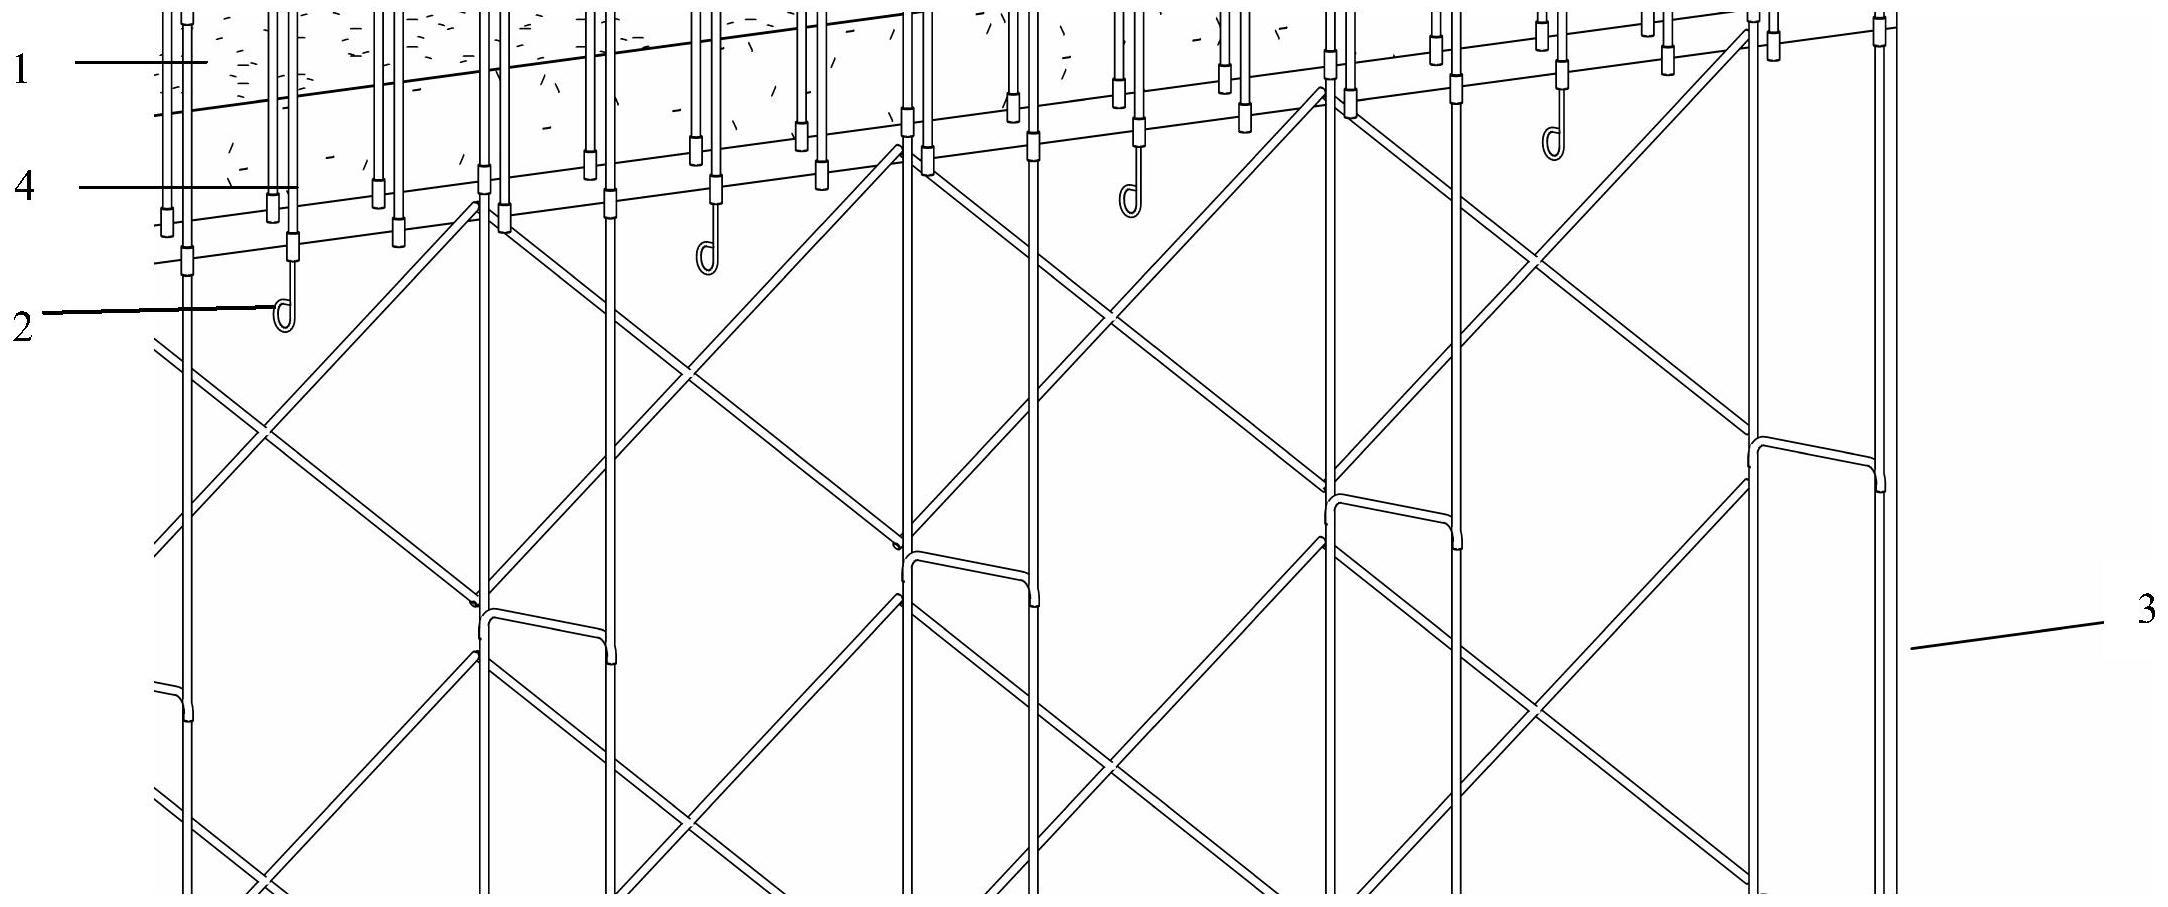 侧墙施工悬挂安全带用具的制作方法